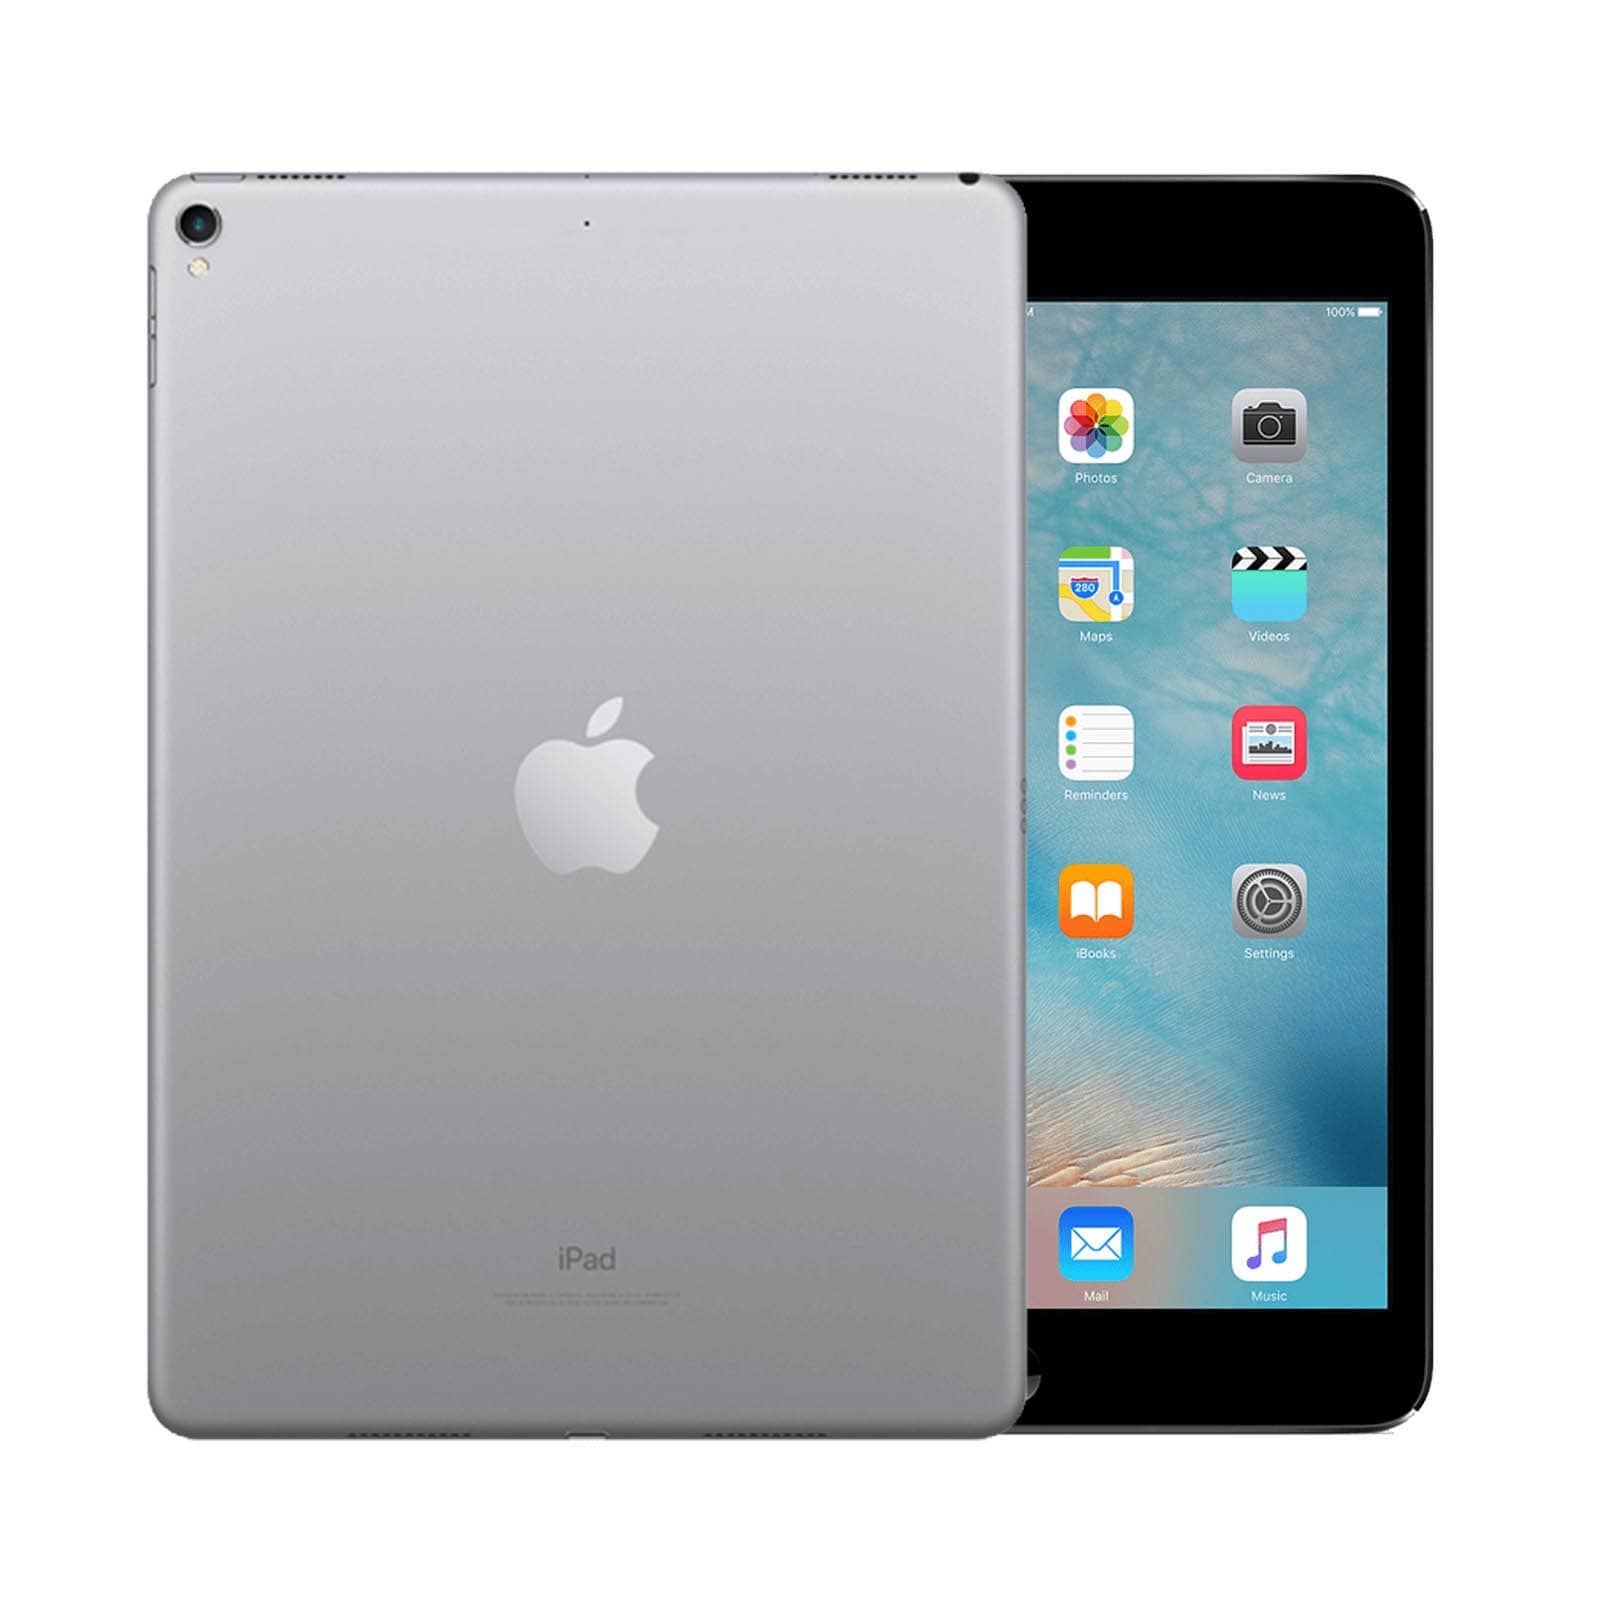 iPad Pro 9.7 Inch 32GB Space Grey Very Good - WiFi 32GB Space Grey Very Good